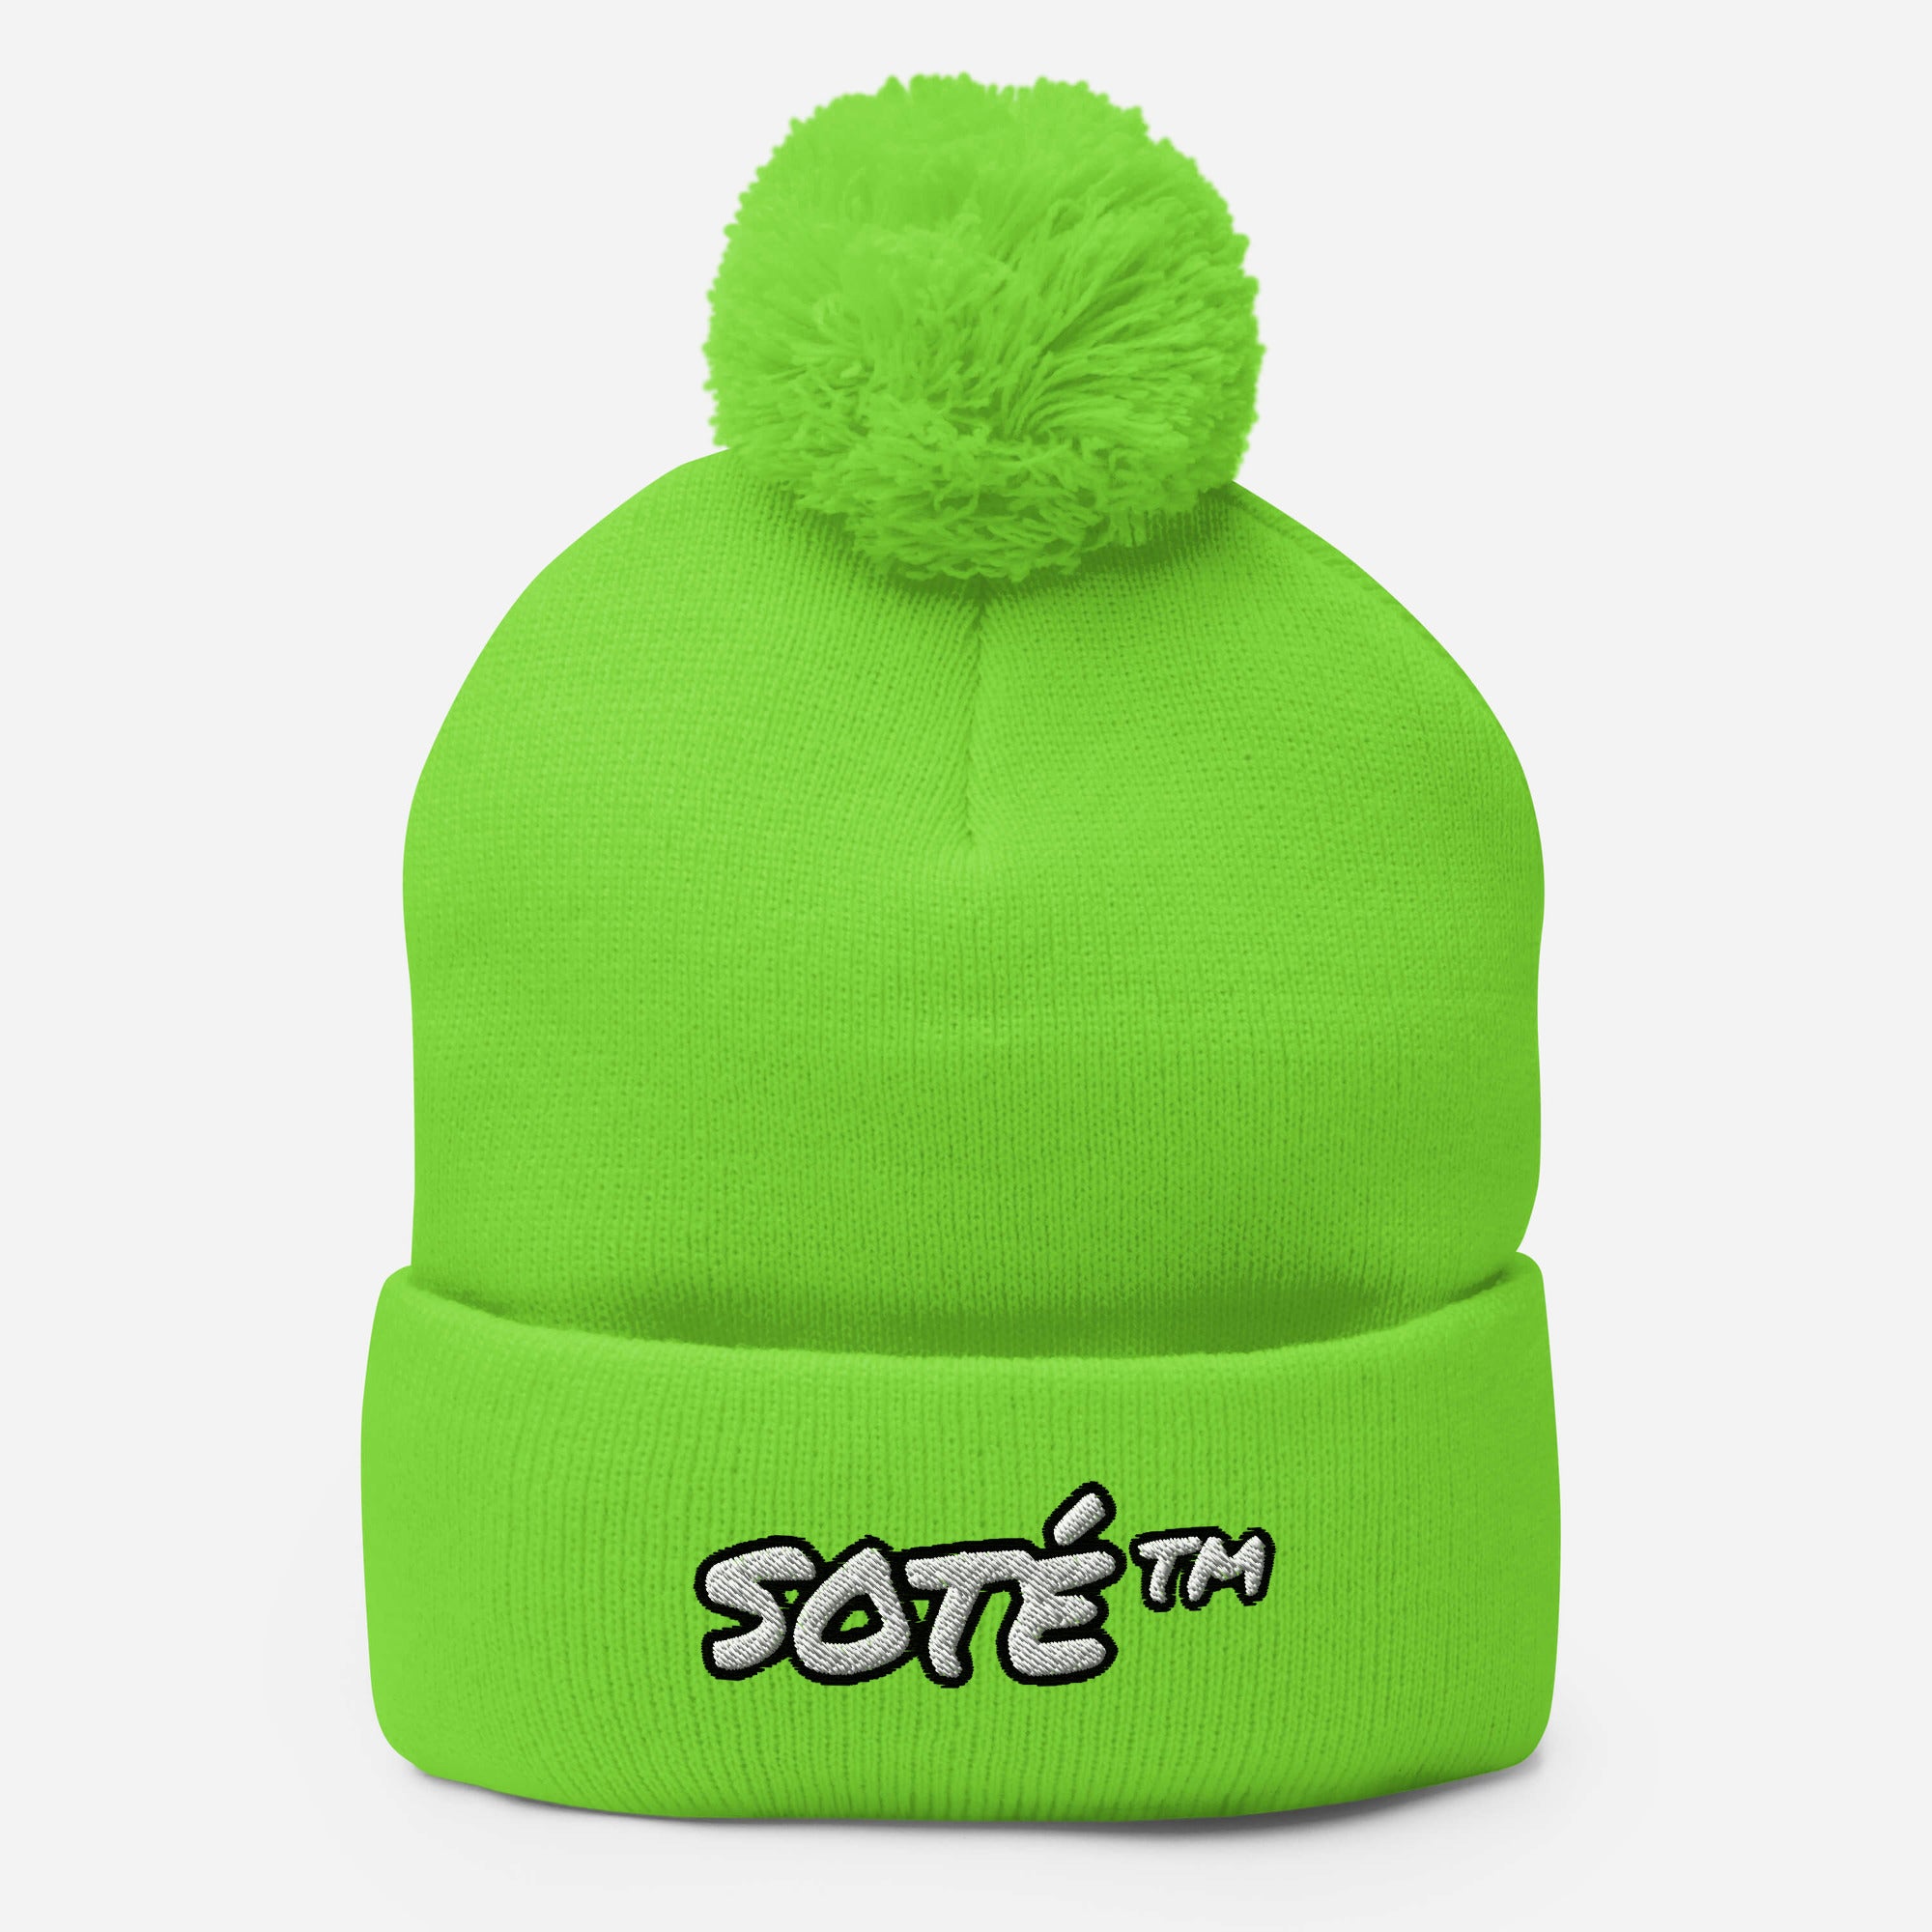 SOTÉ Pom-Pom Knit Beanie Hat